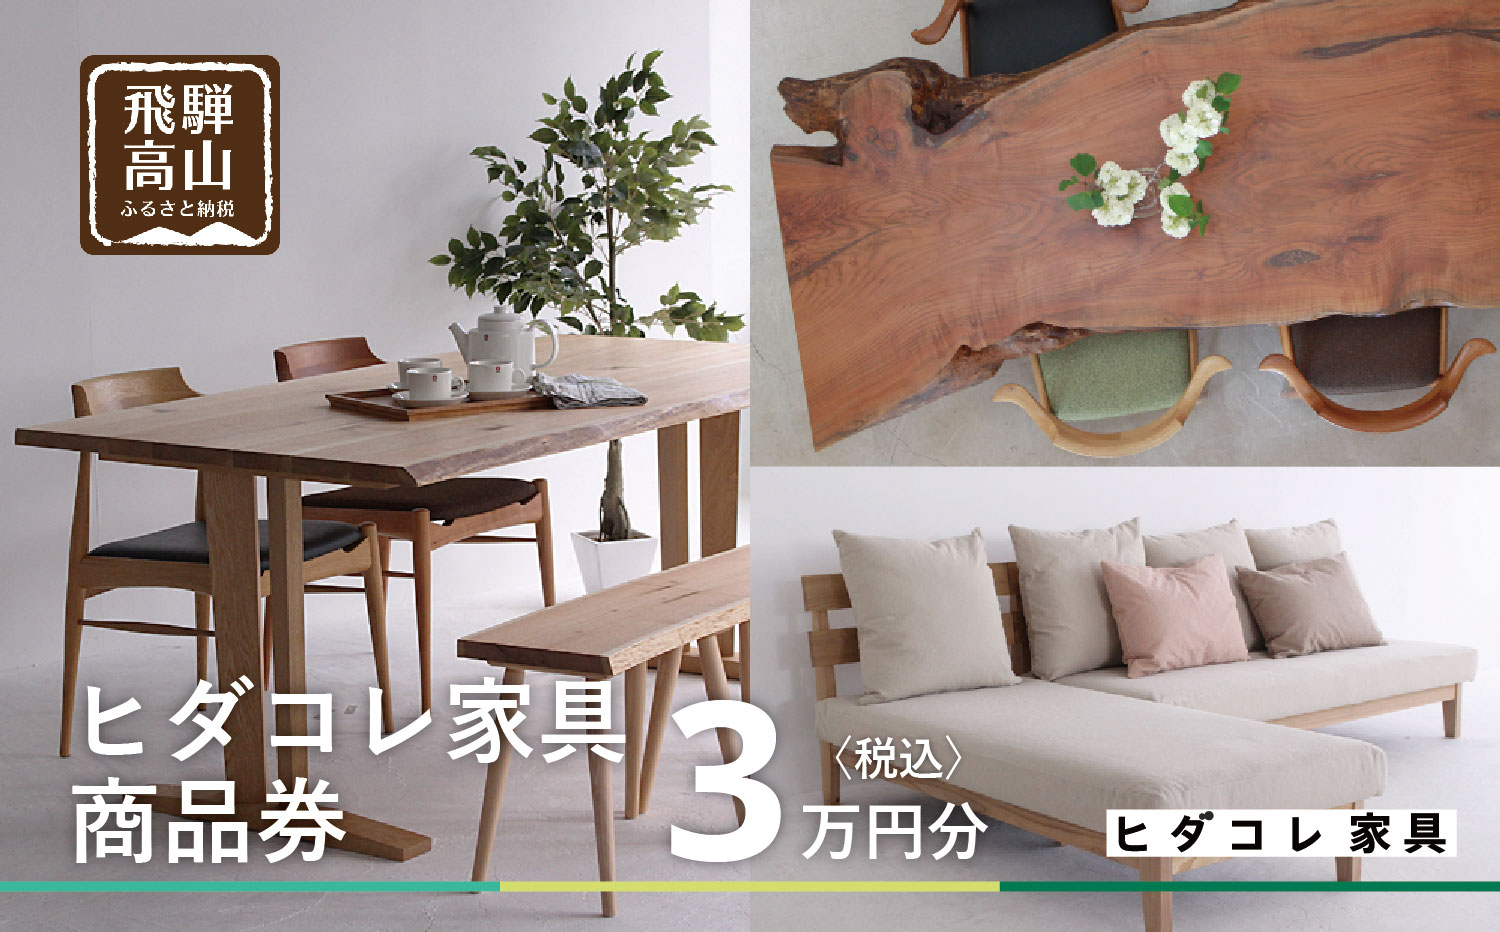 オーダー家具 利用券 3万円分の商品画像です。